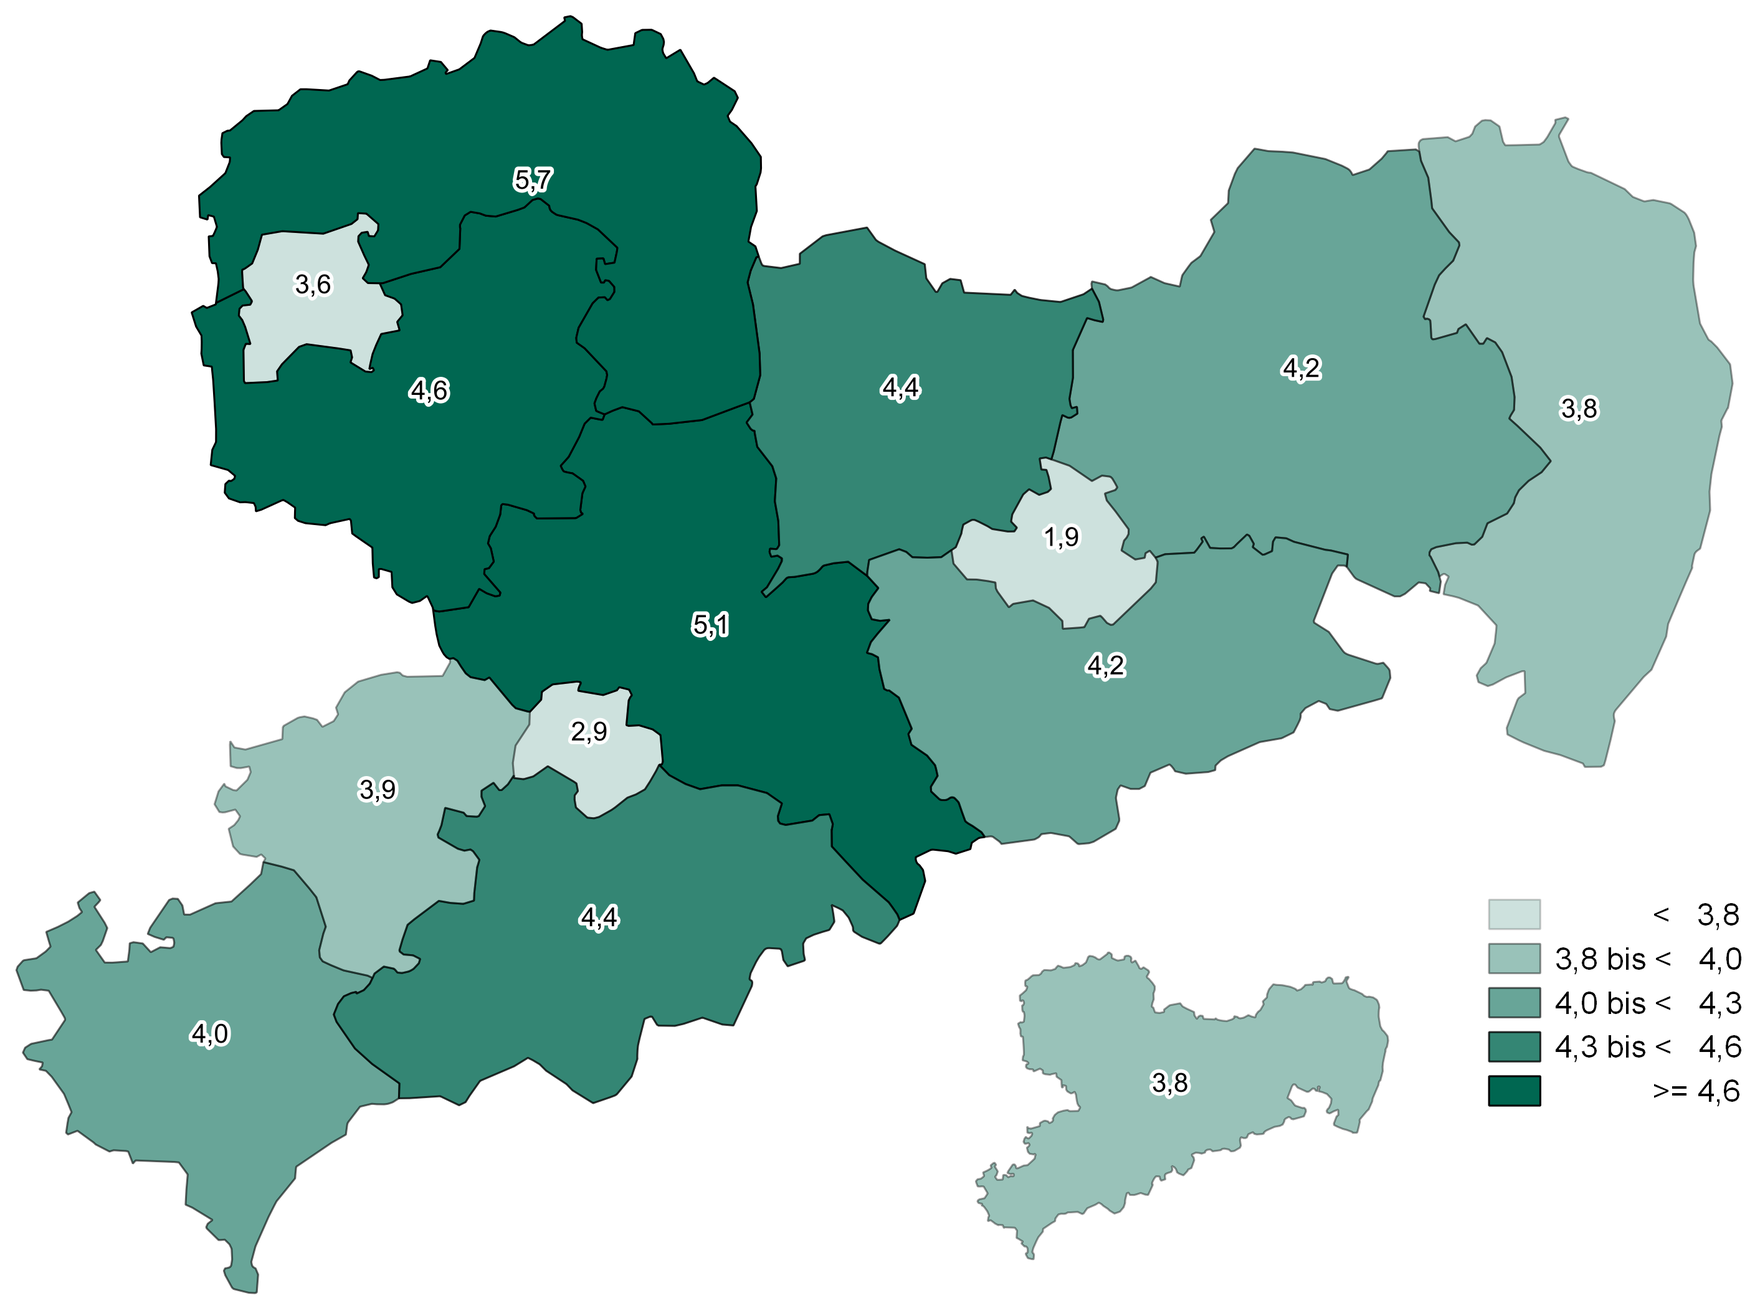 Die wenigsten adipösen Kinder leben in den kreisfreien Städten (1,9-3,6 Prozent). In Nordsachen, dem Landkreis Leipzig und Mittelsachsen ist der Anteil am höchsten mit 4,6 beziehungsweise 5,7 Prozent.